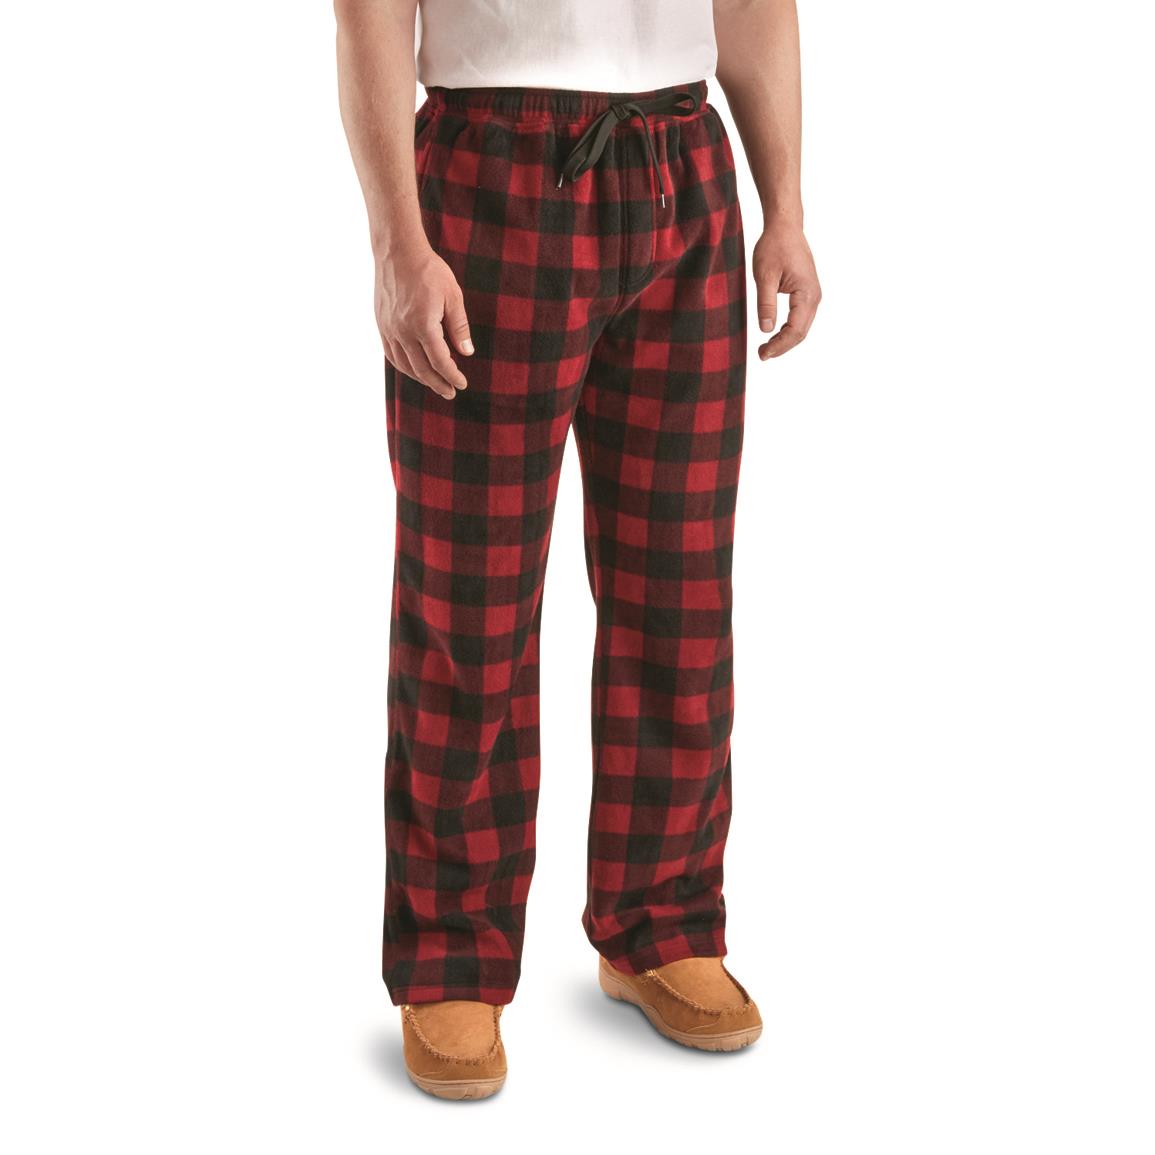 Guide Gear Men's Fleece Pajama Pants, Maroon/black Buffalo